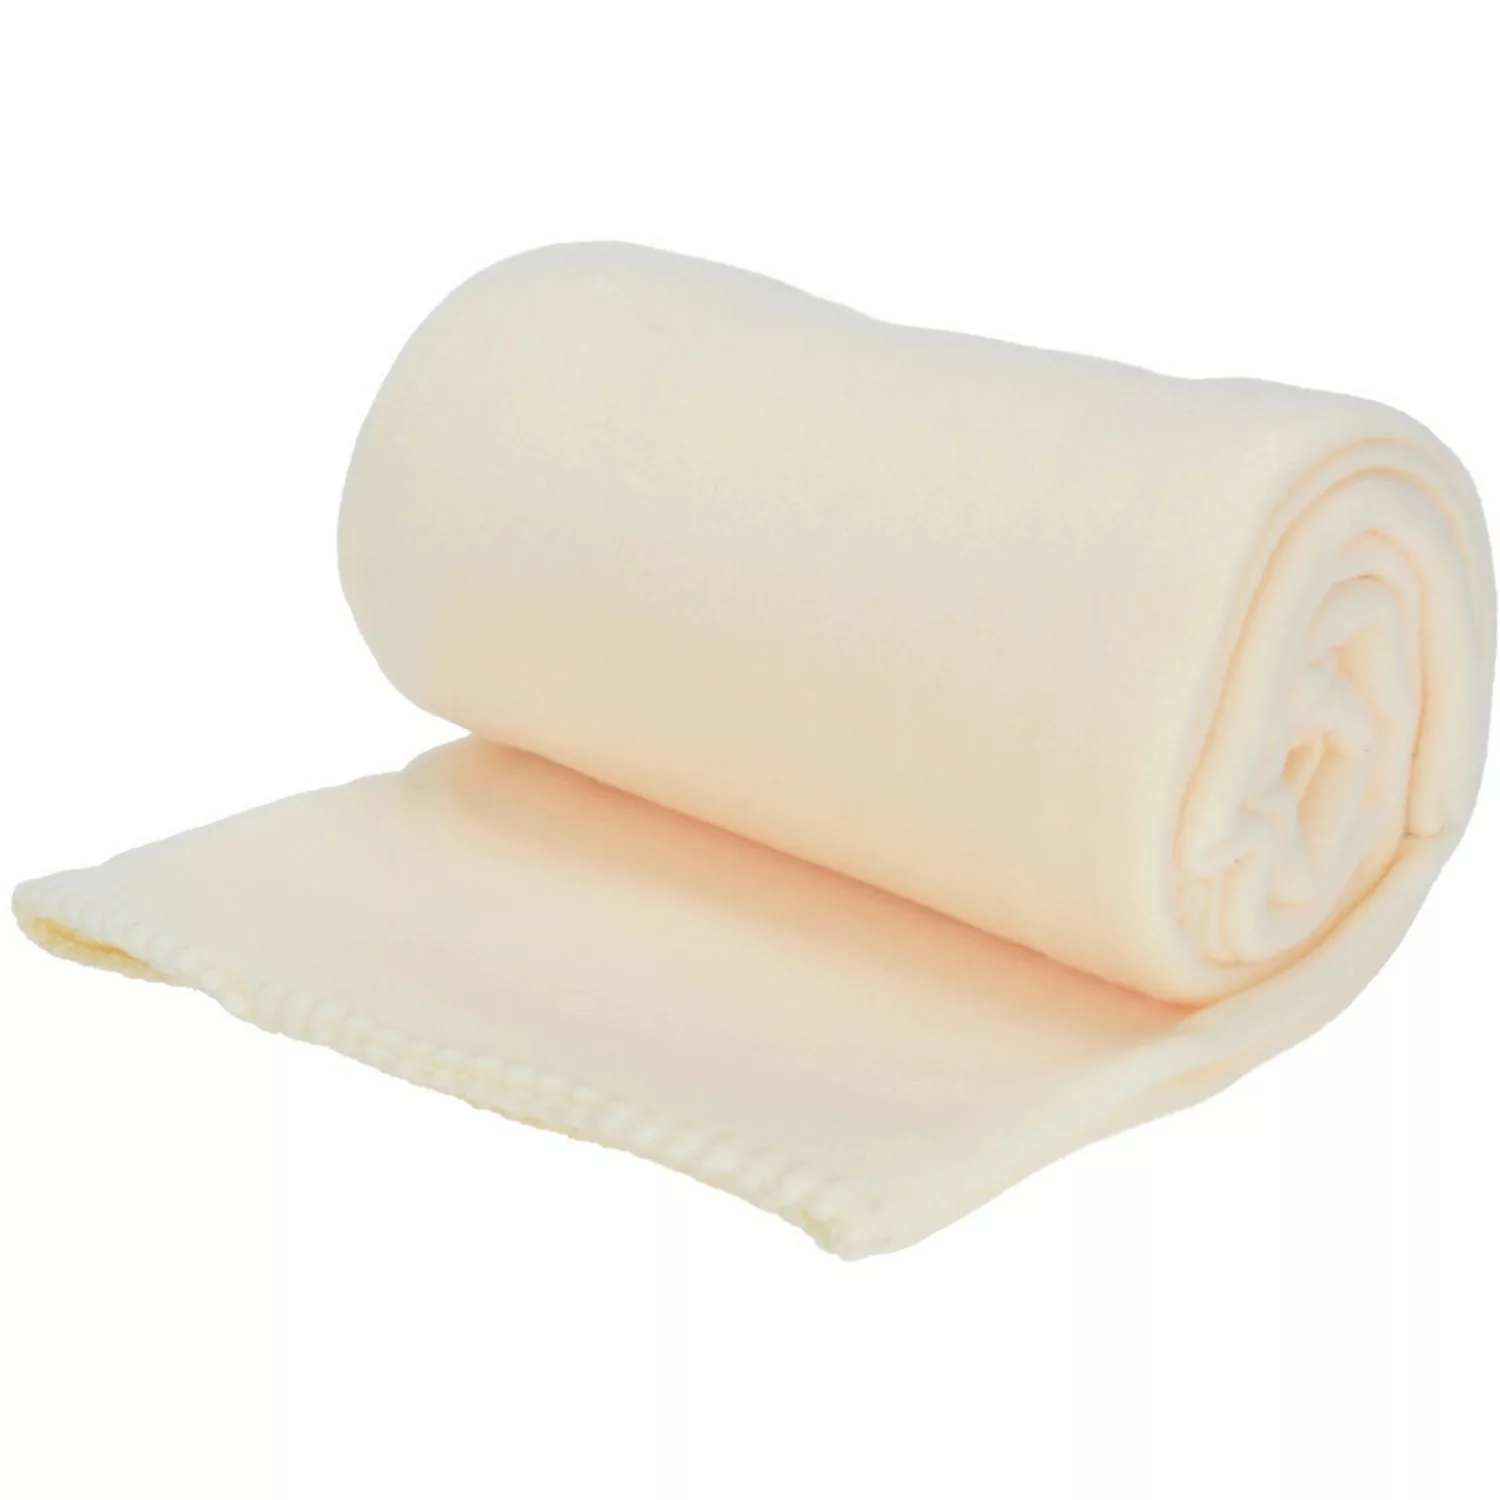 Fleece-Decke 125 cm x 150 cm Weiß günstig online kaufen